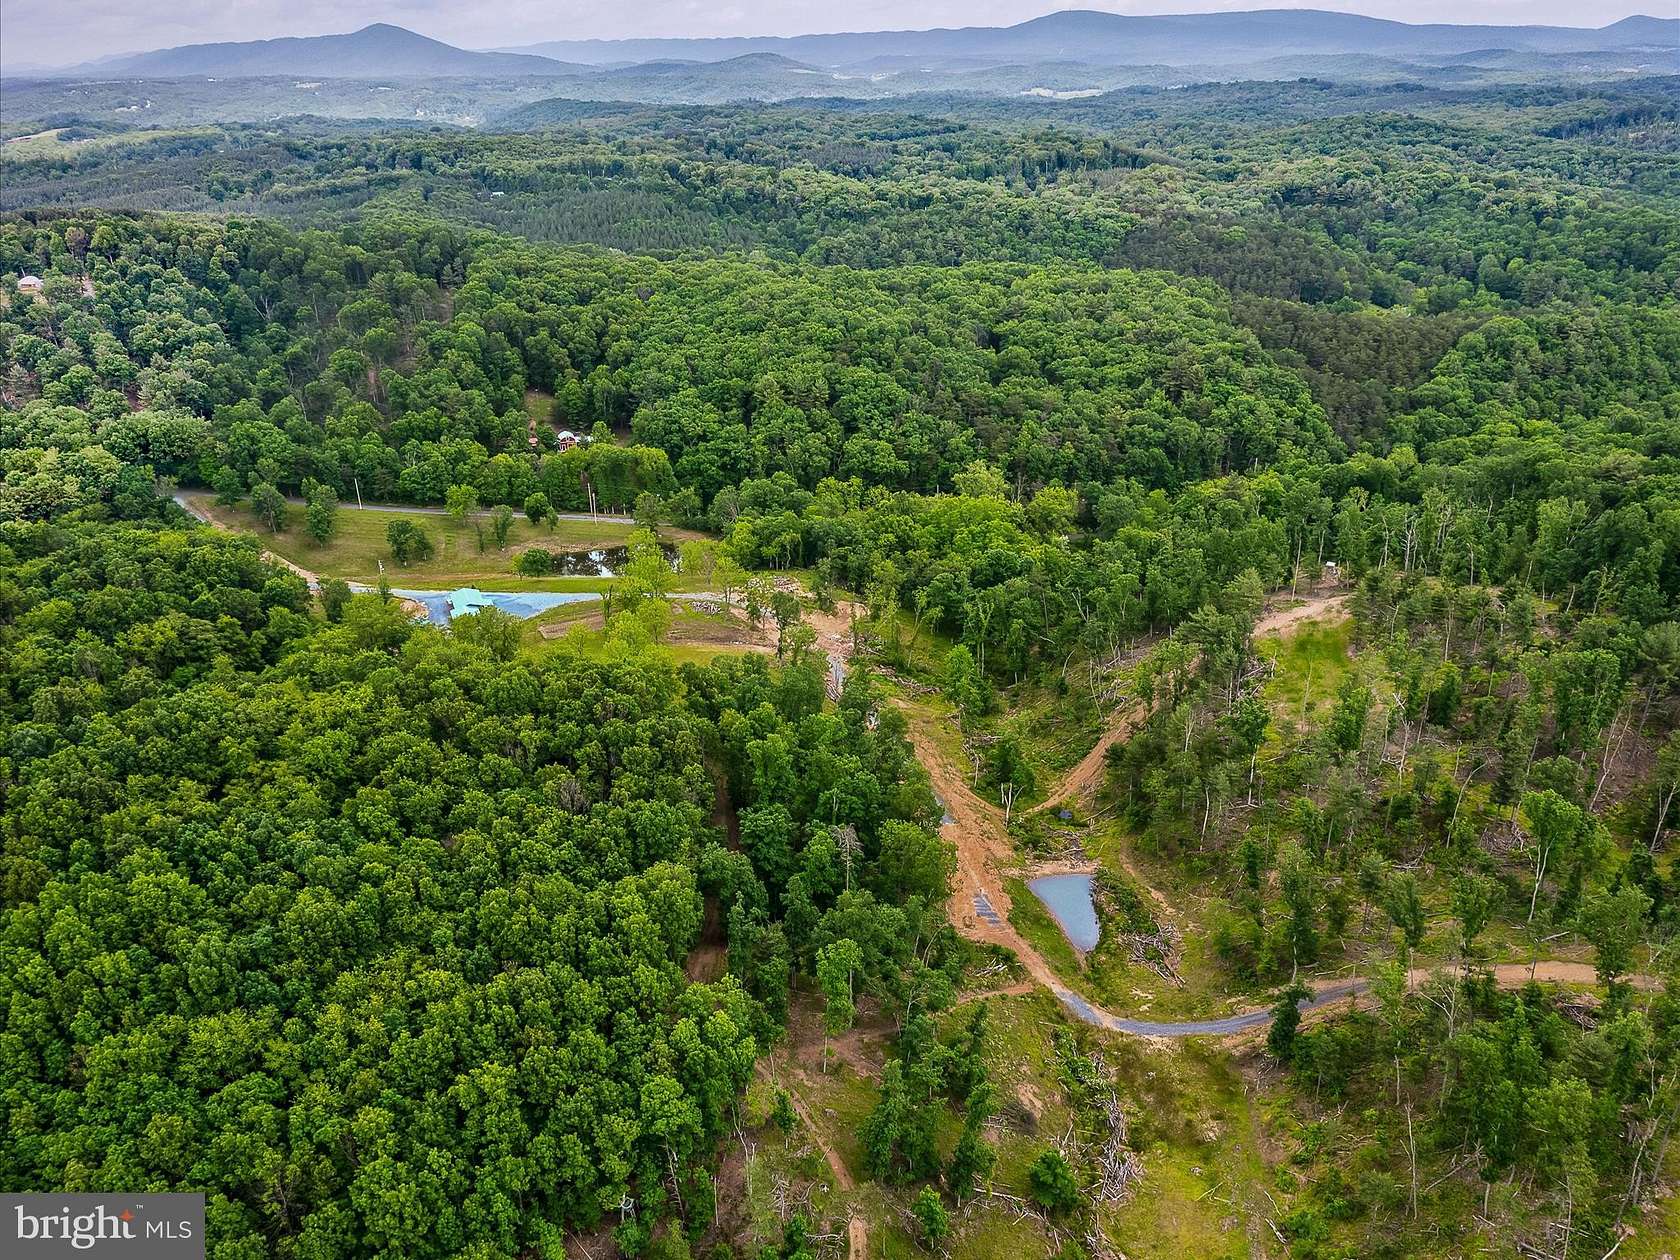 36.5 Acres of Land for Sale in Berkeley Springs, West Virginia